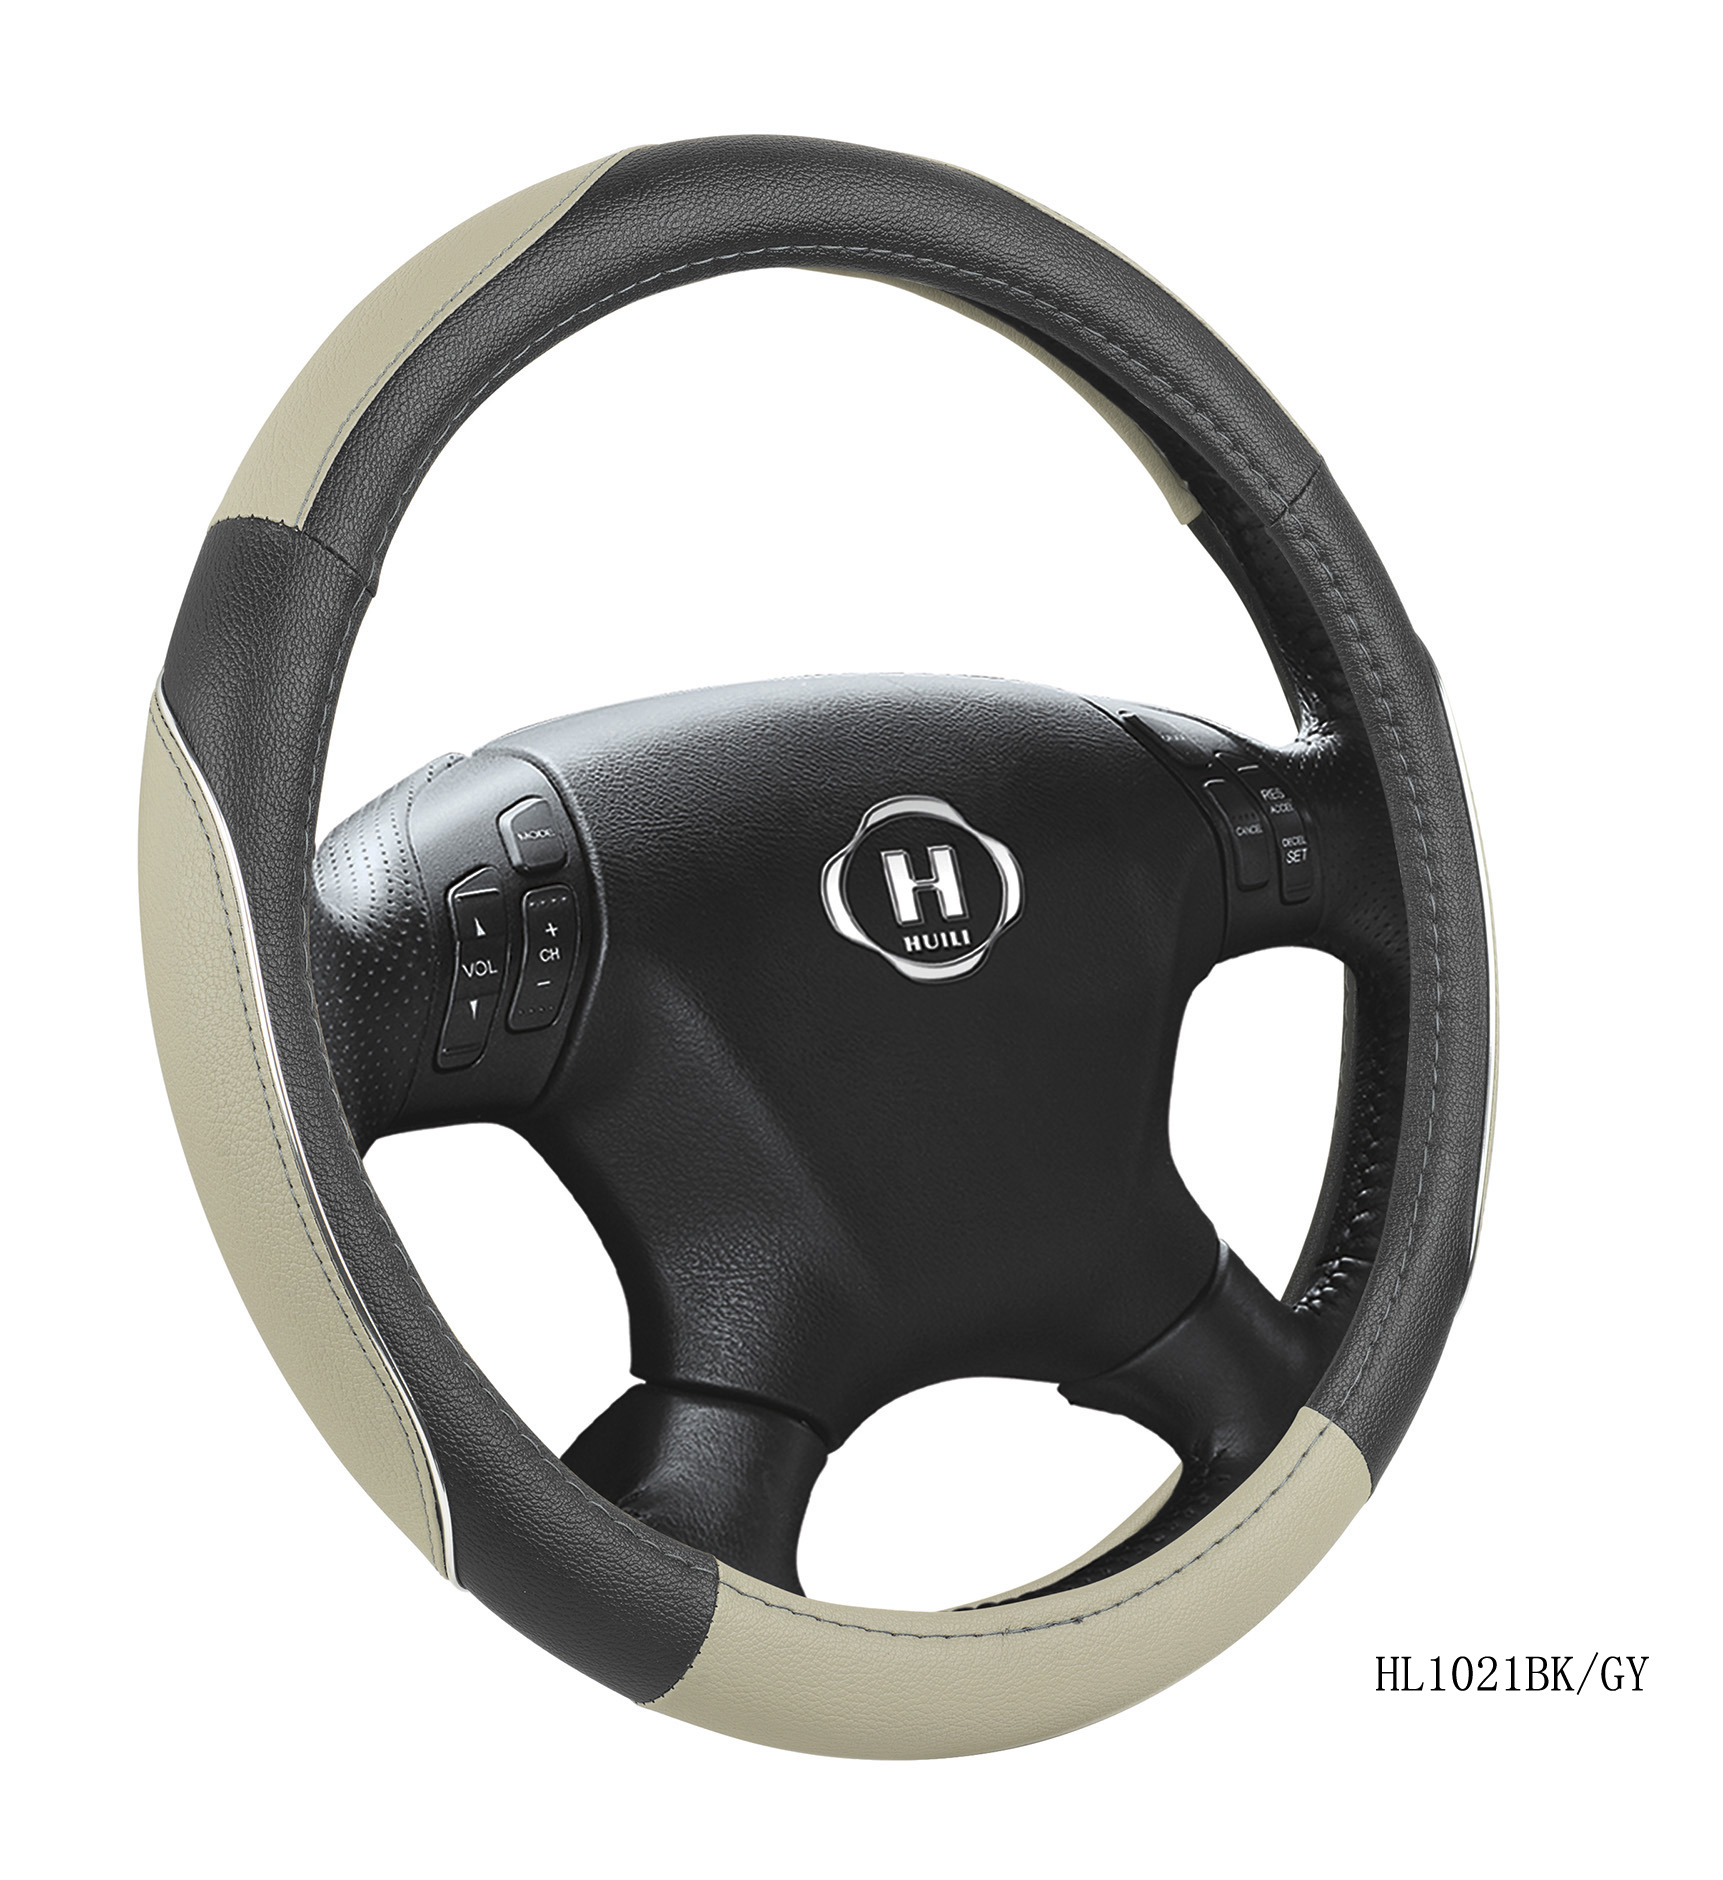 Grip Steering Wheel Cover